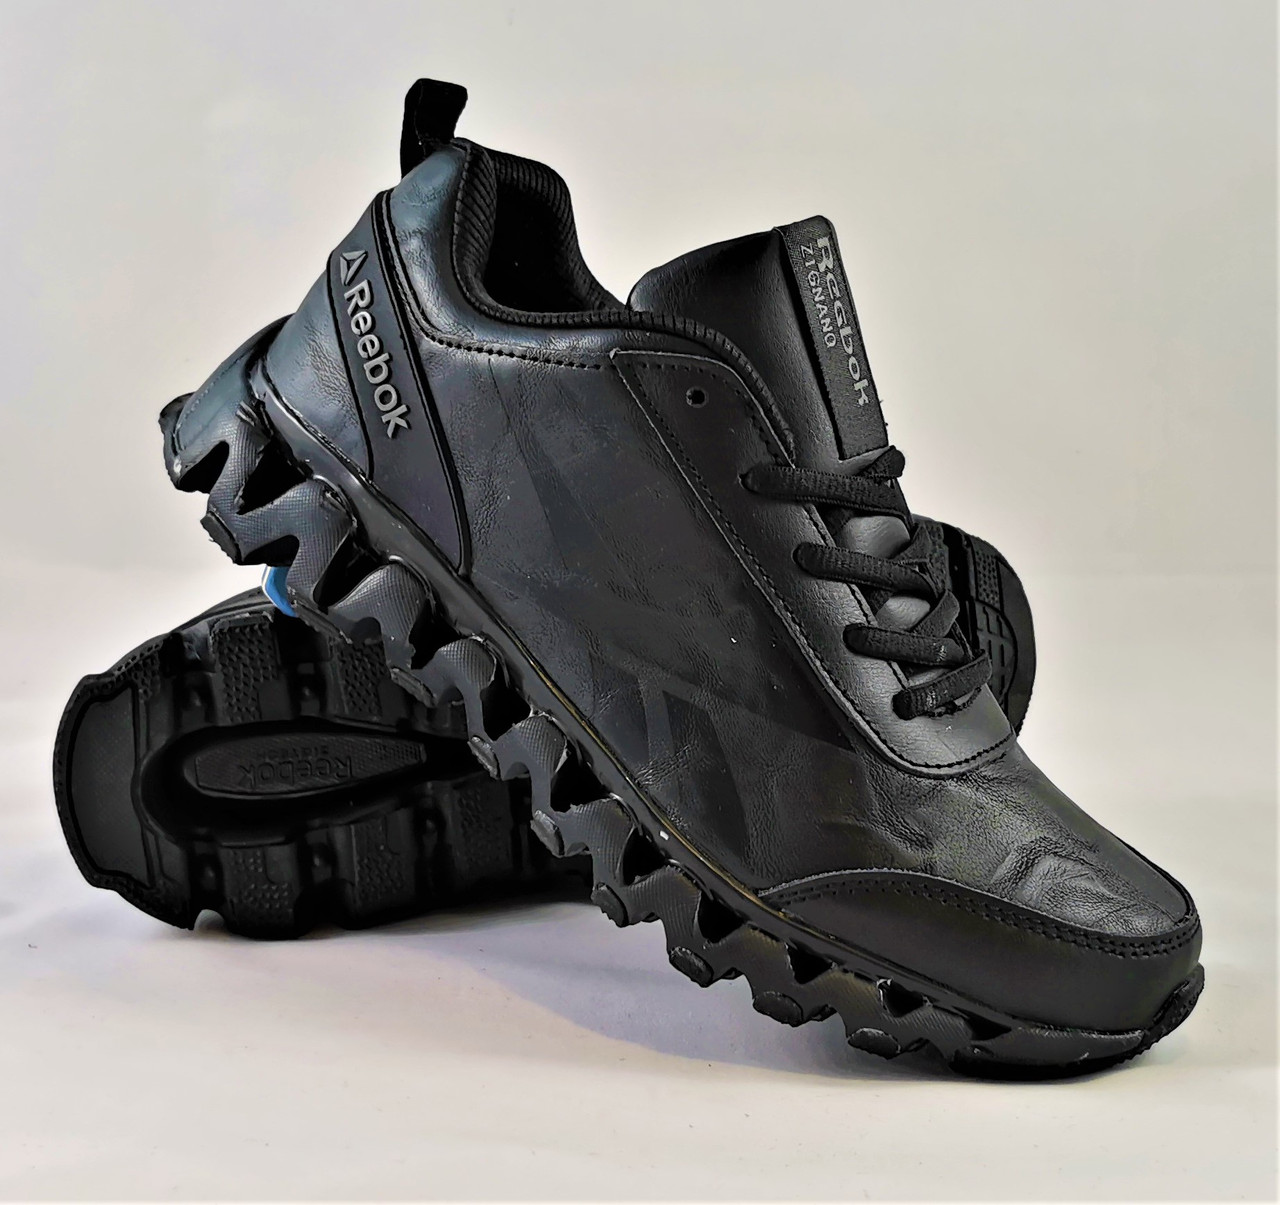 Кроссовки Reebok Zignano Чёрные Мужские Рибок (размеры: 41) Видео Обзор,  цена 975 грн - Prom.ua (ID#1111809255)